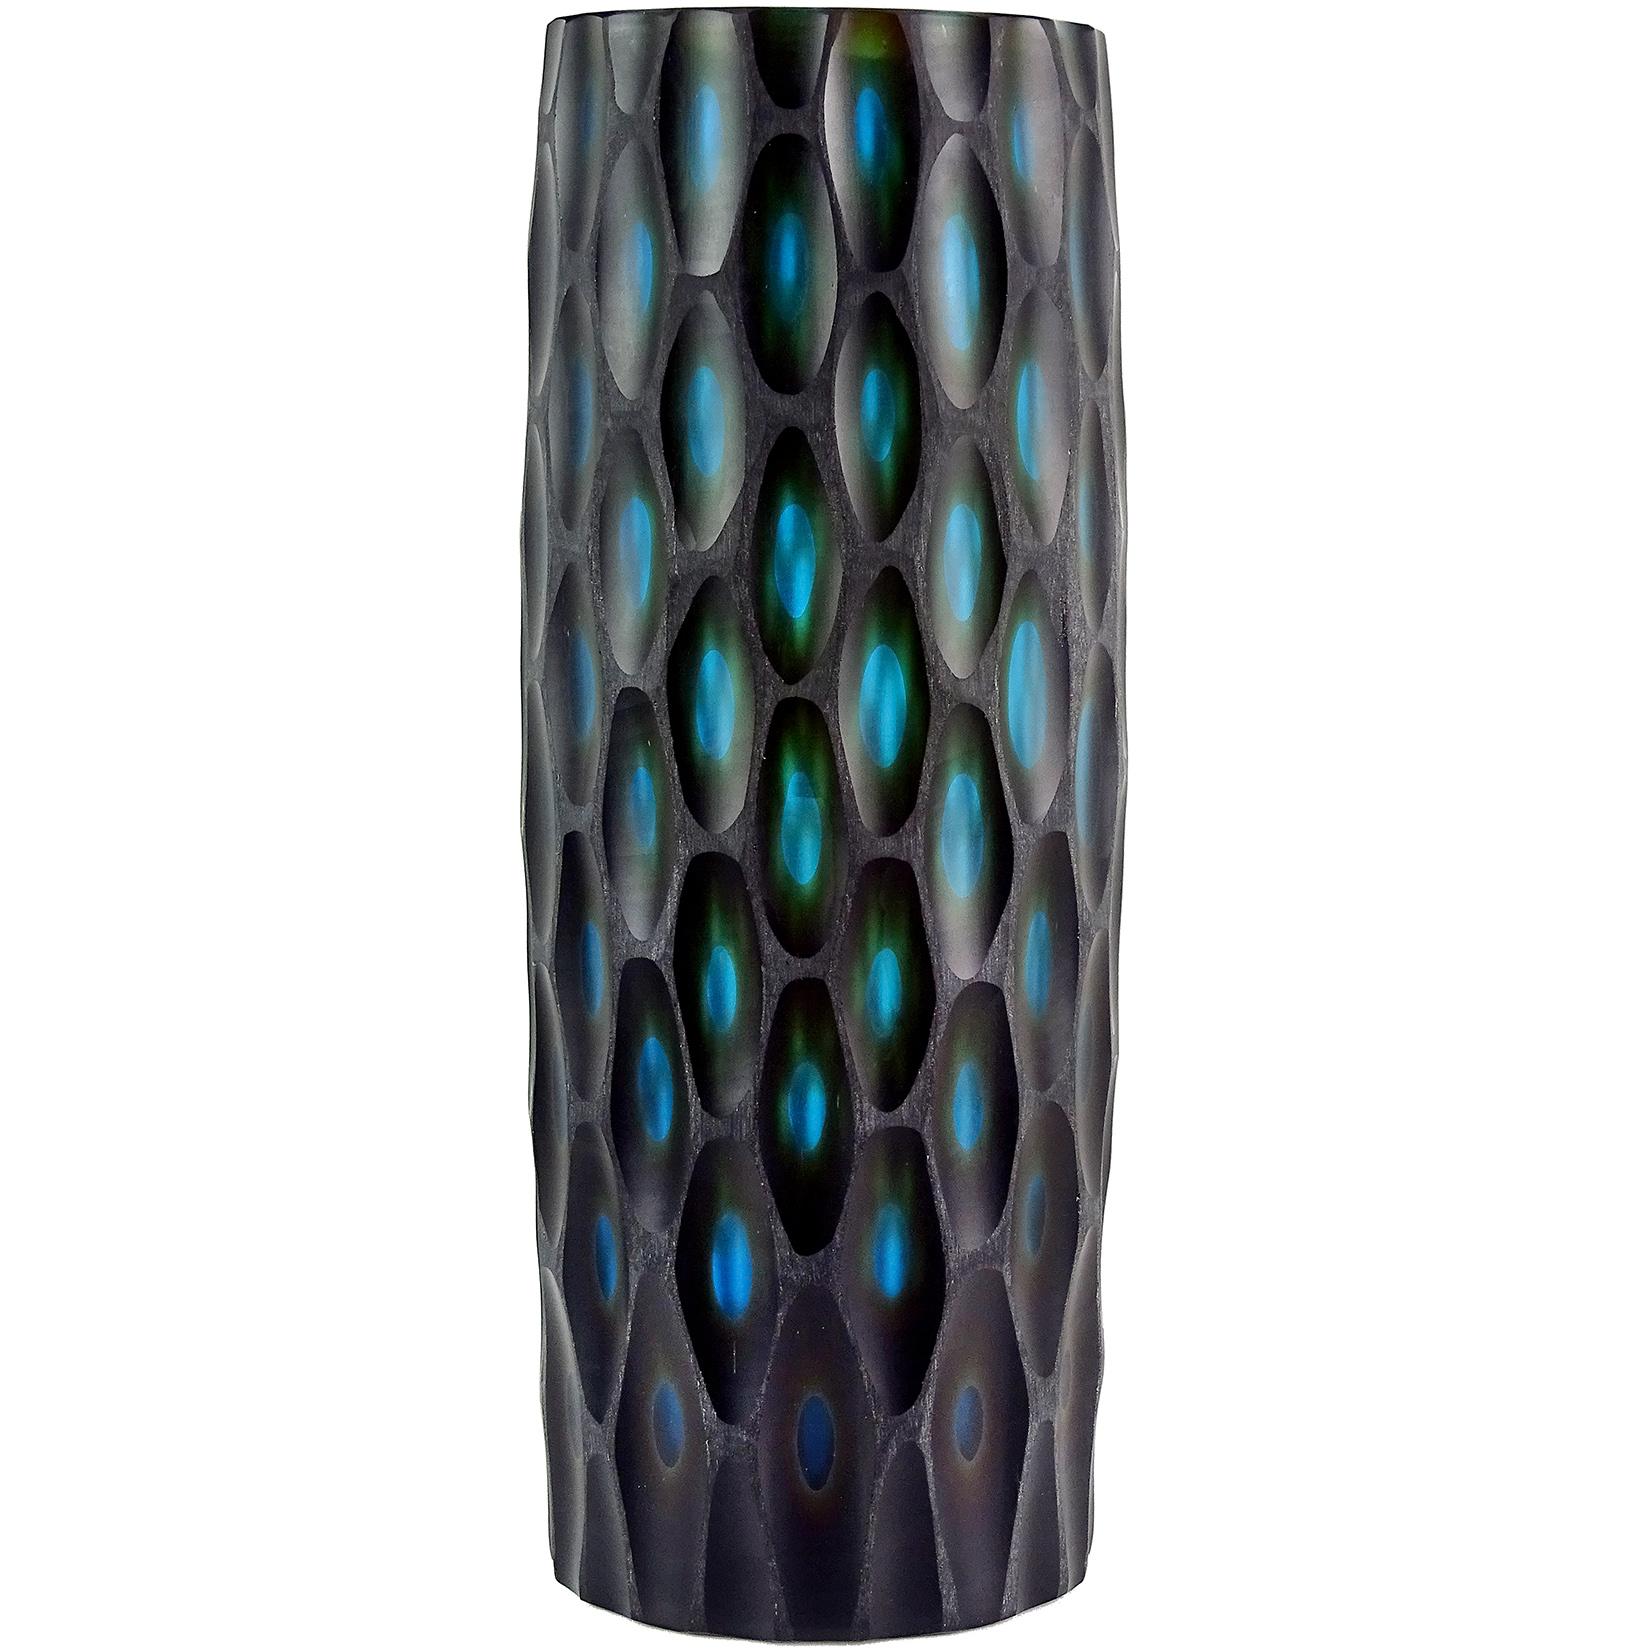 Murano Modern Carved Black Blue Green Italian Art Glass Sculptural Flower Vase